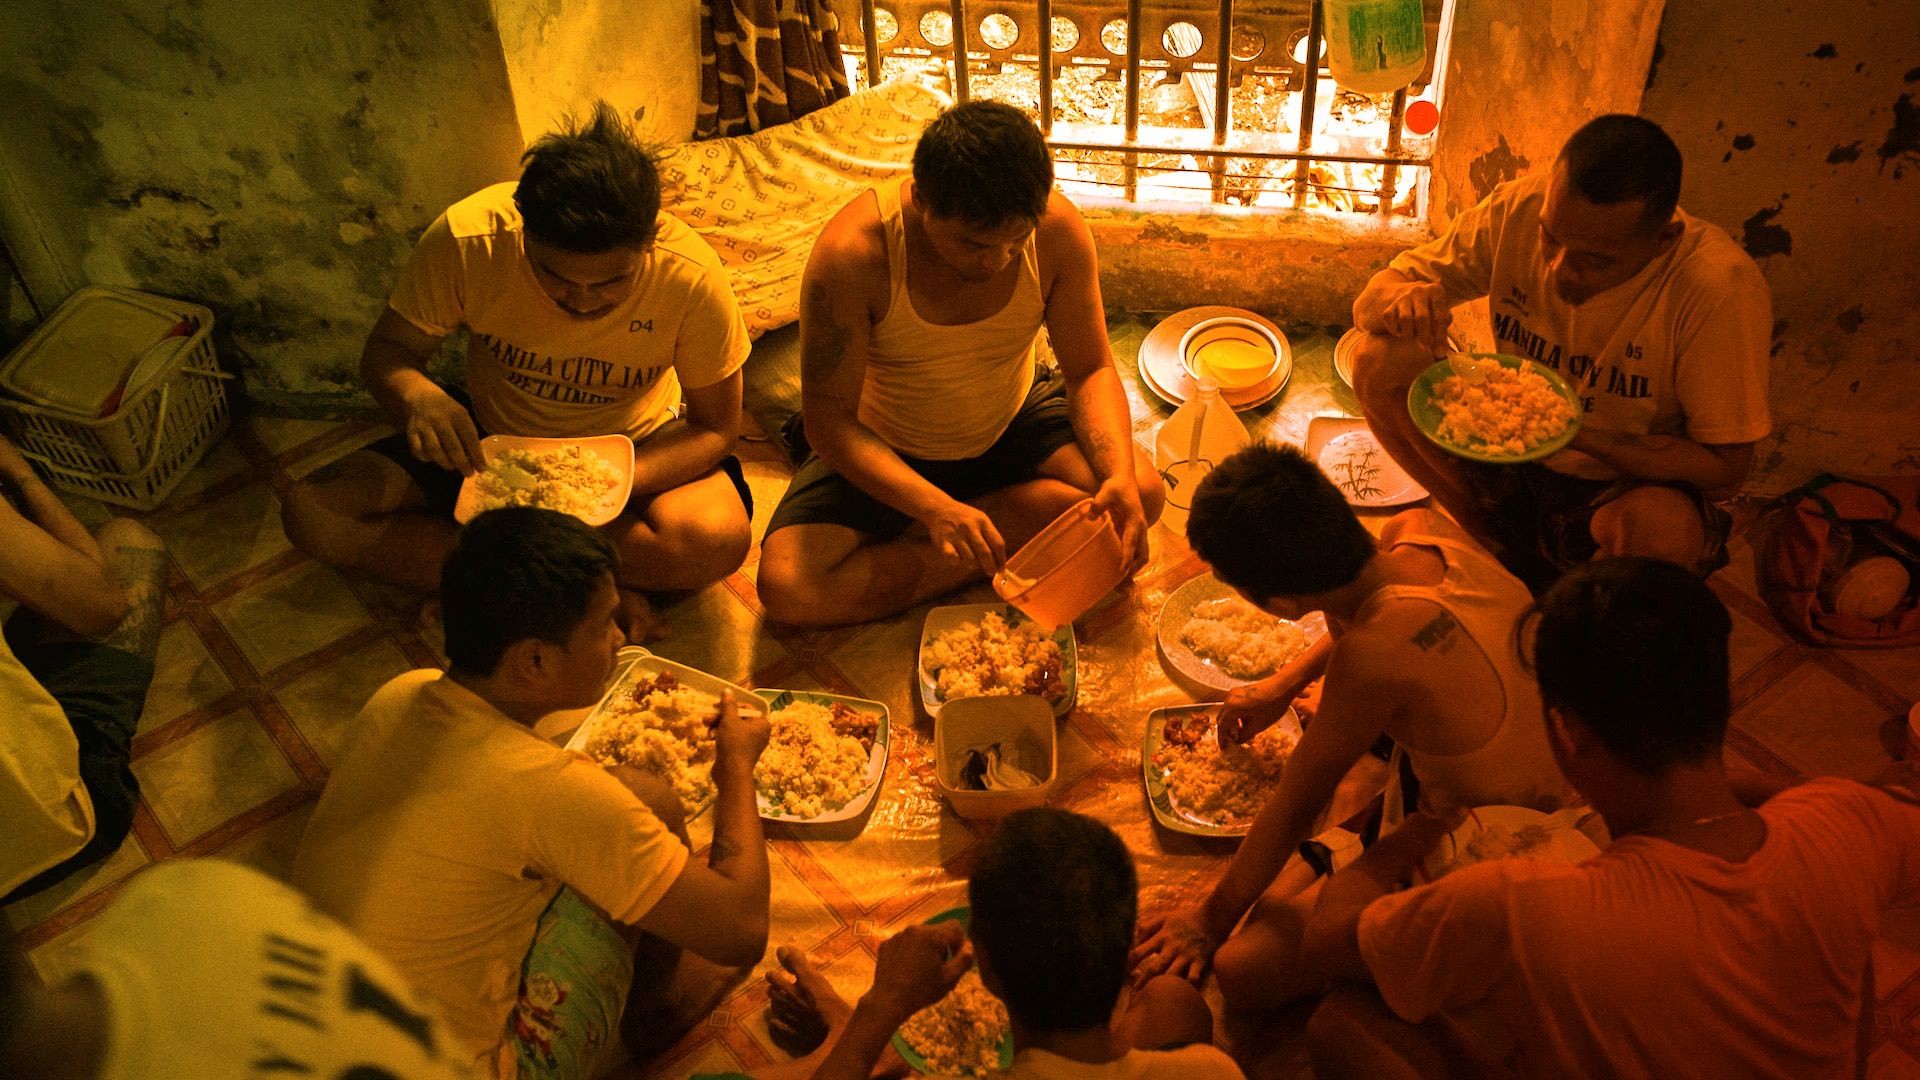 A group of inmates at Manila City jail sharing a meal